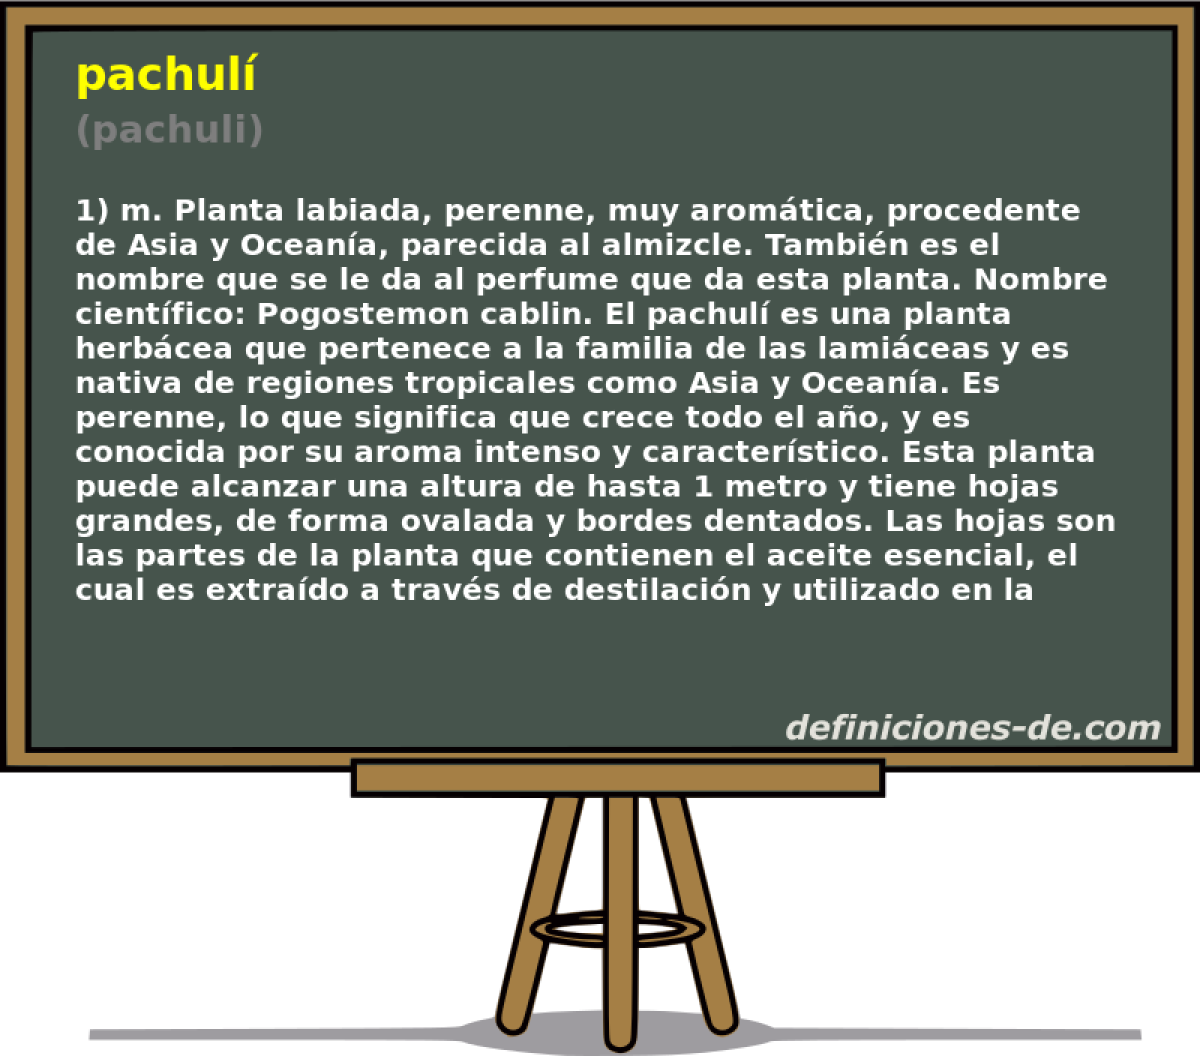 pachul (pachuli)